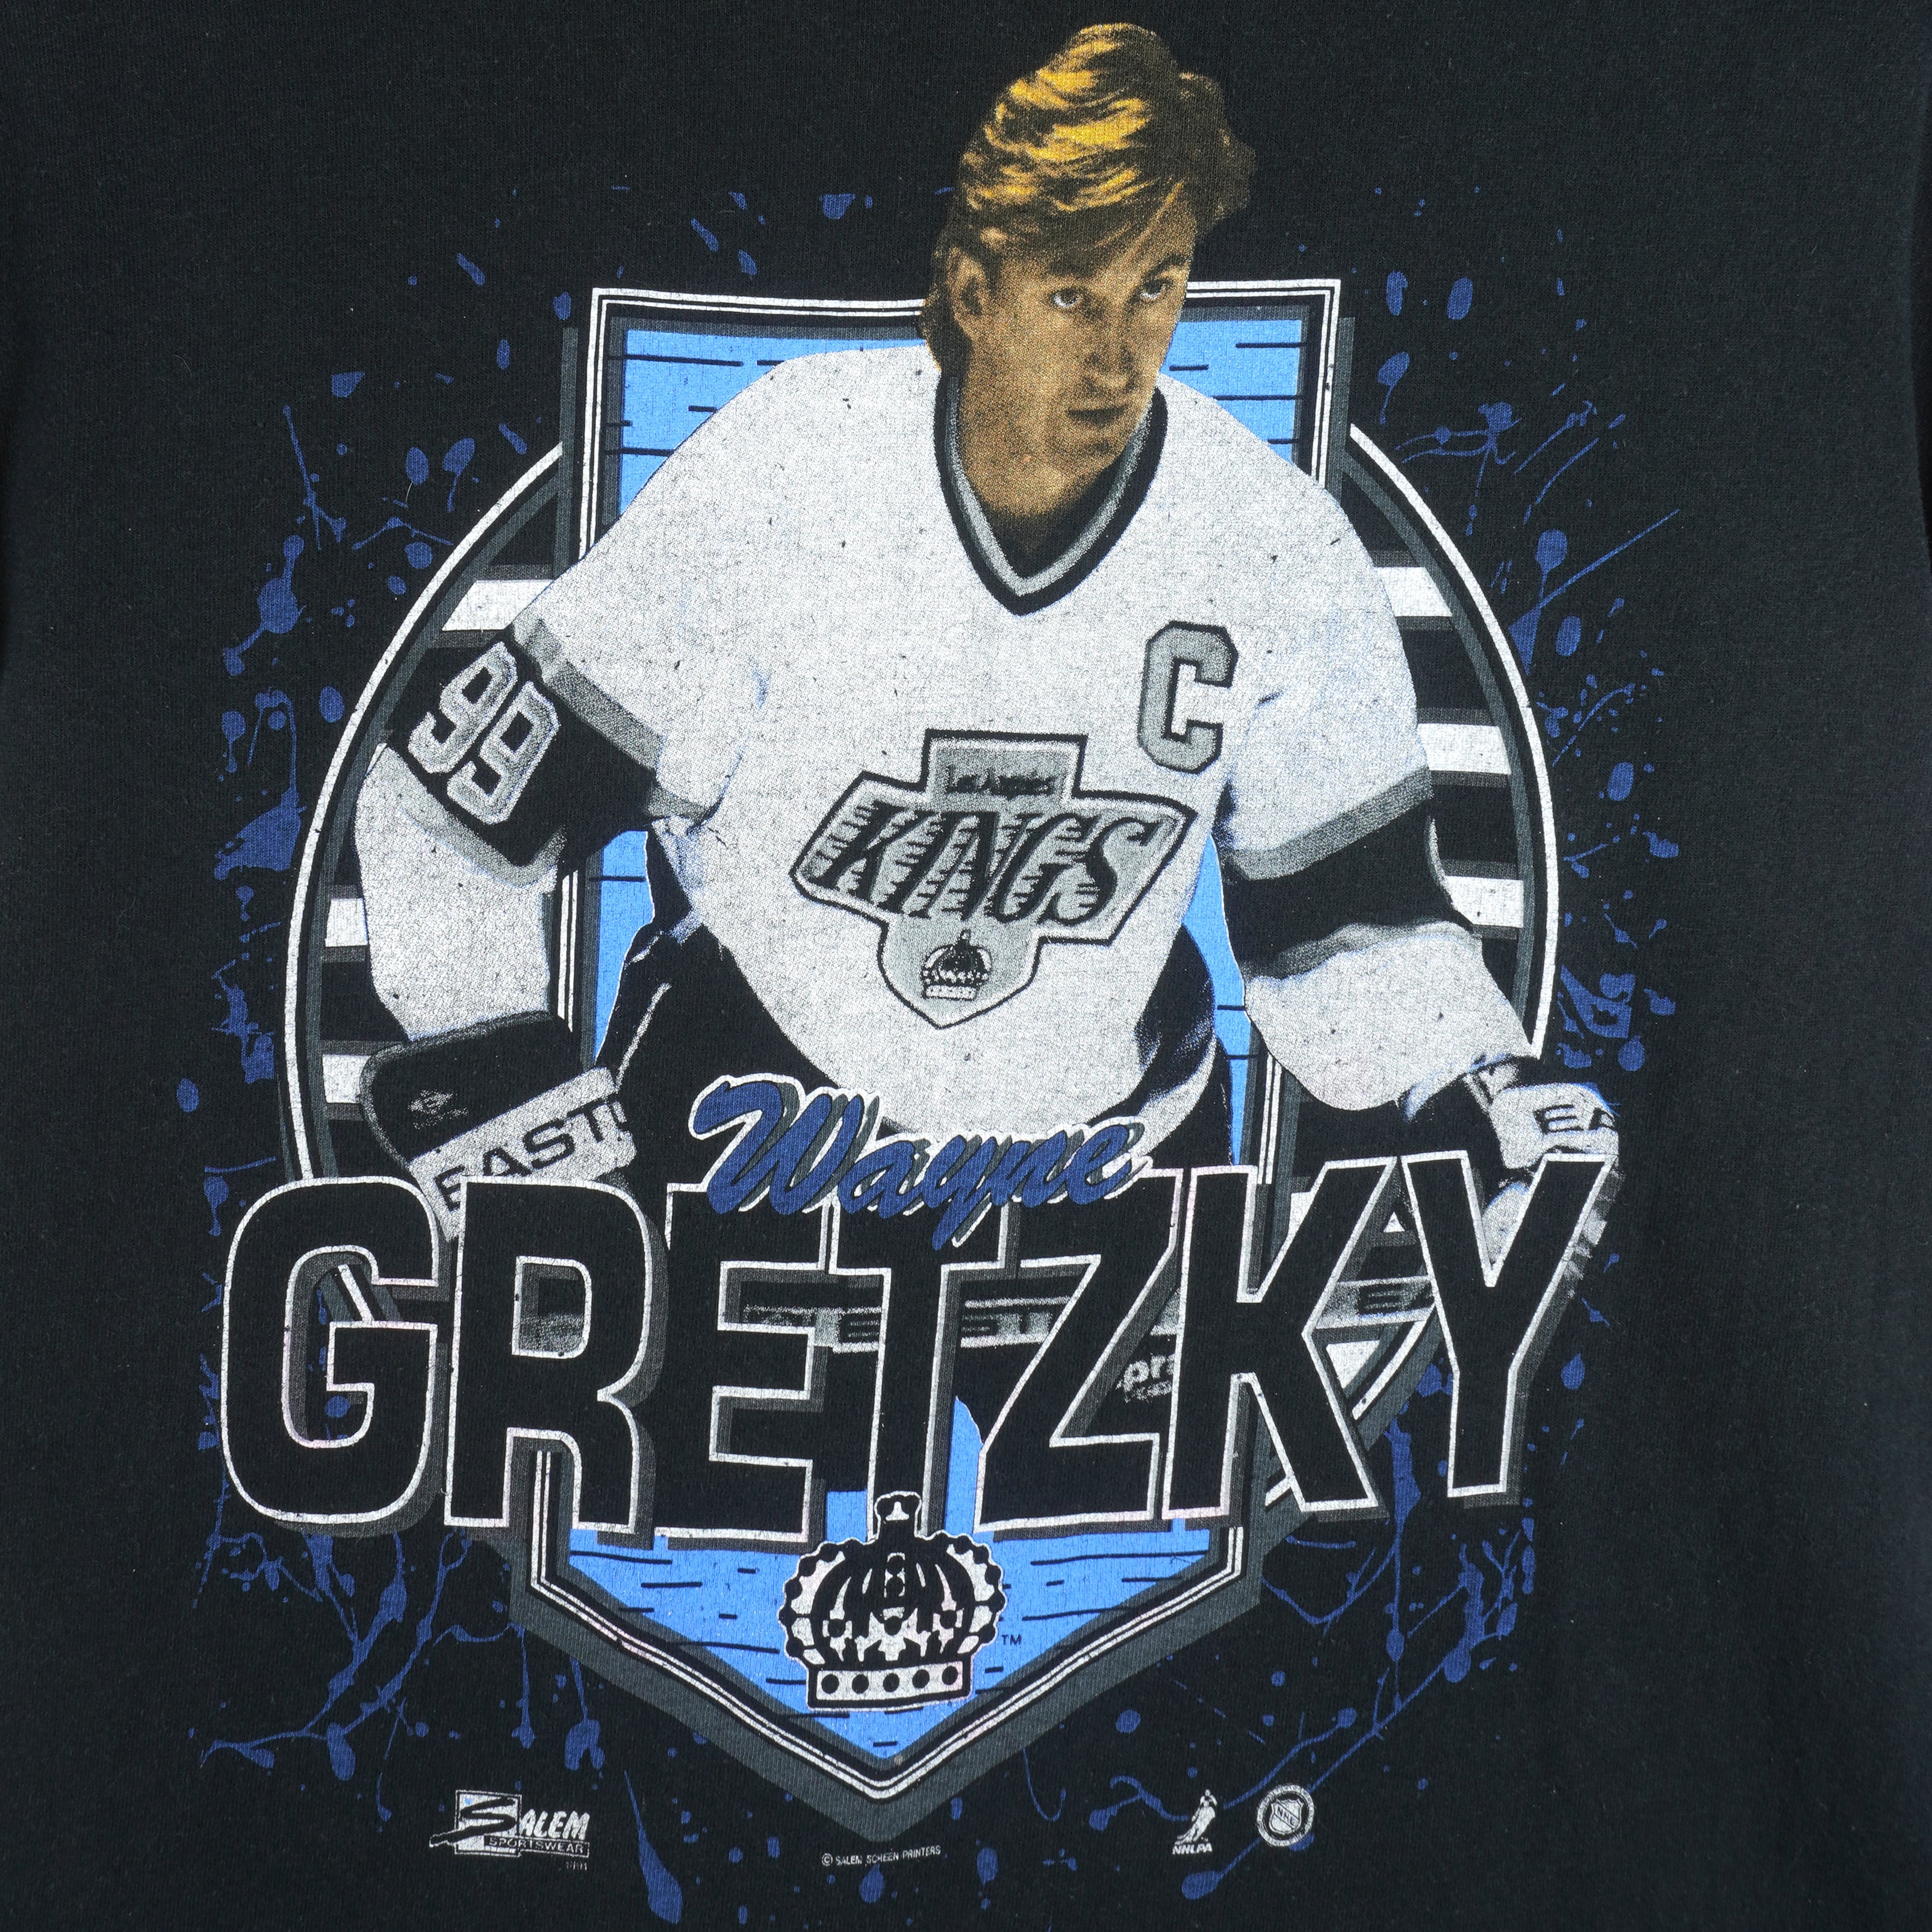 Wayne Gretzky Jerseys, Wayne Gretzky T-Shirts, Gear